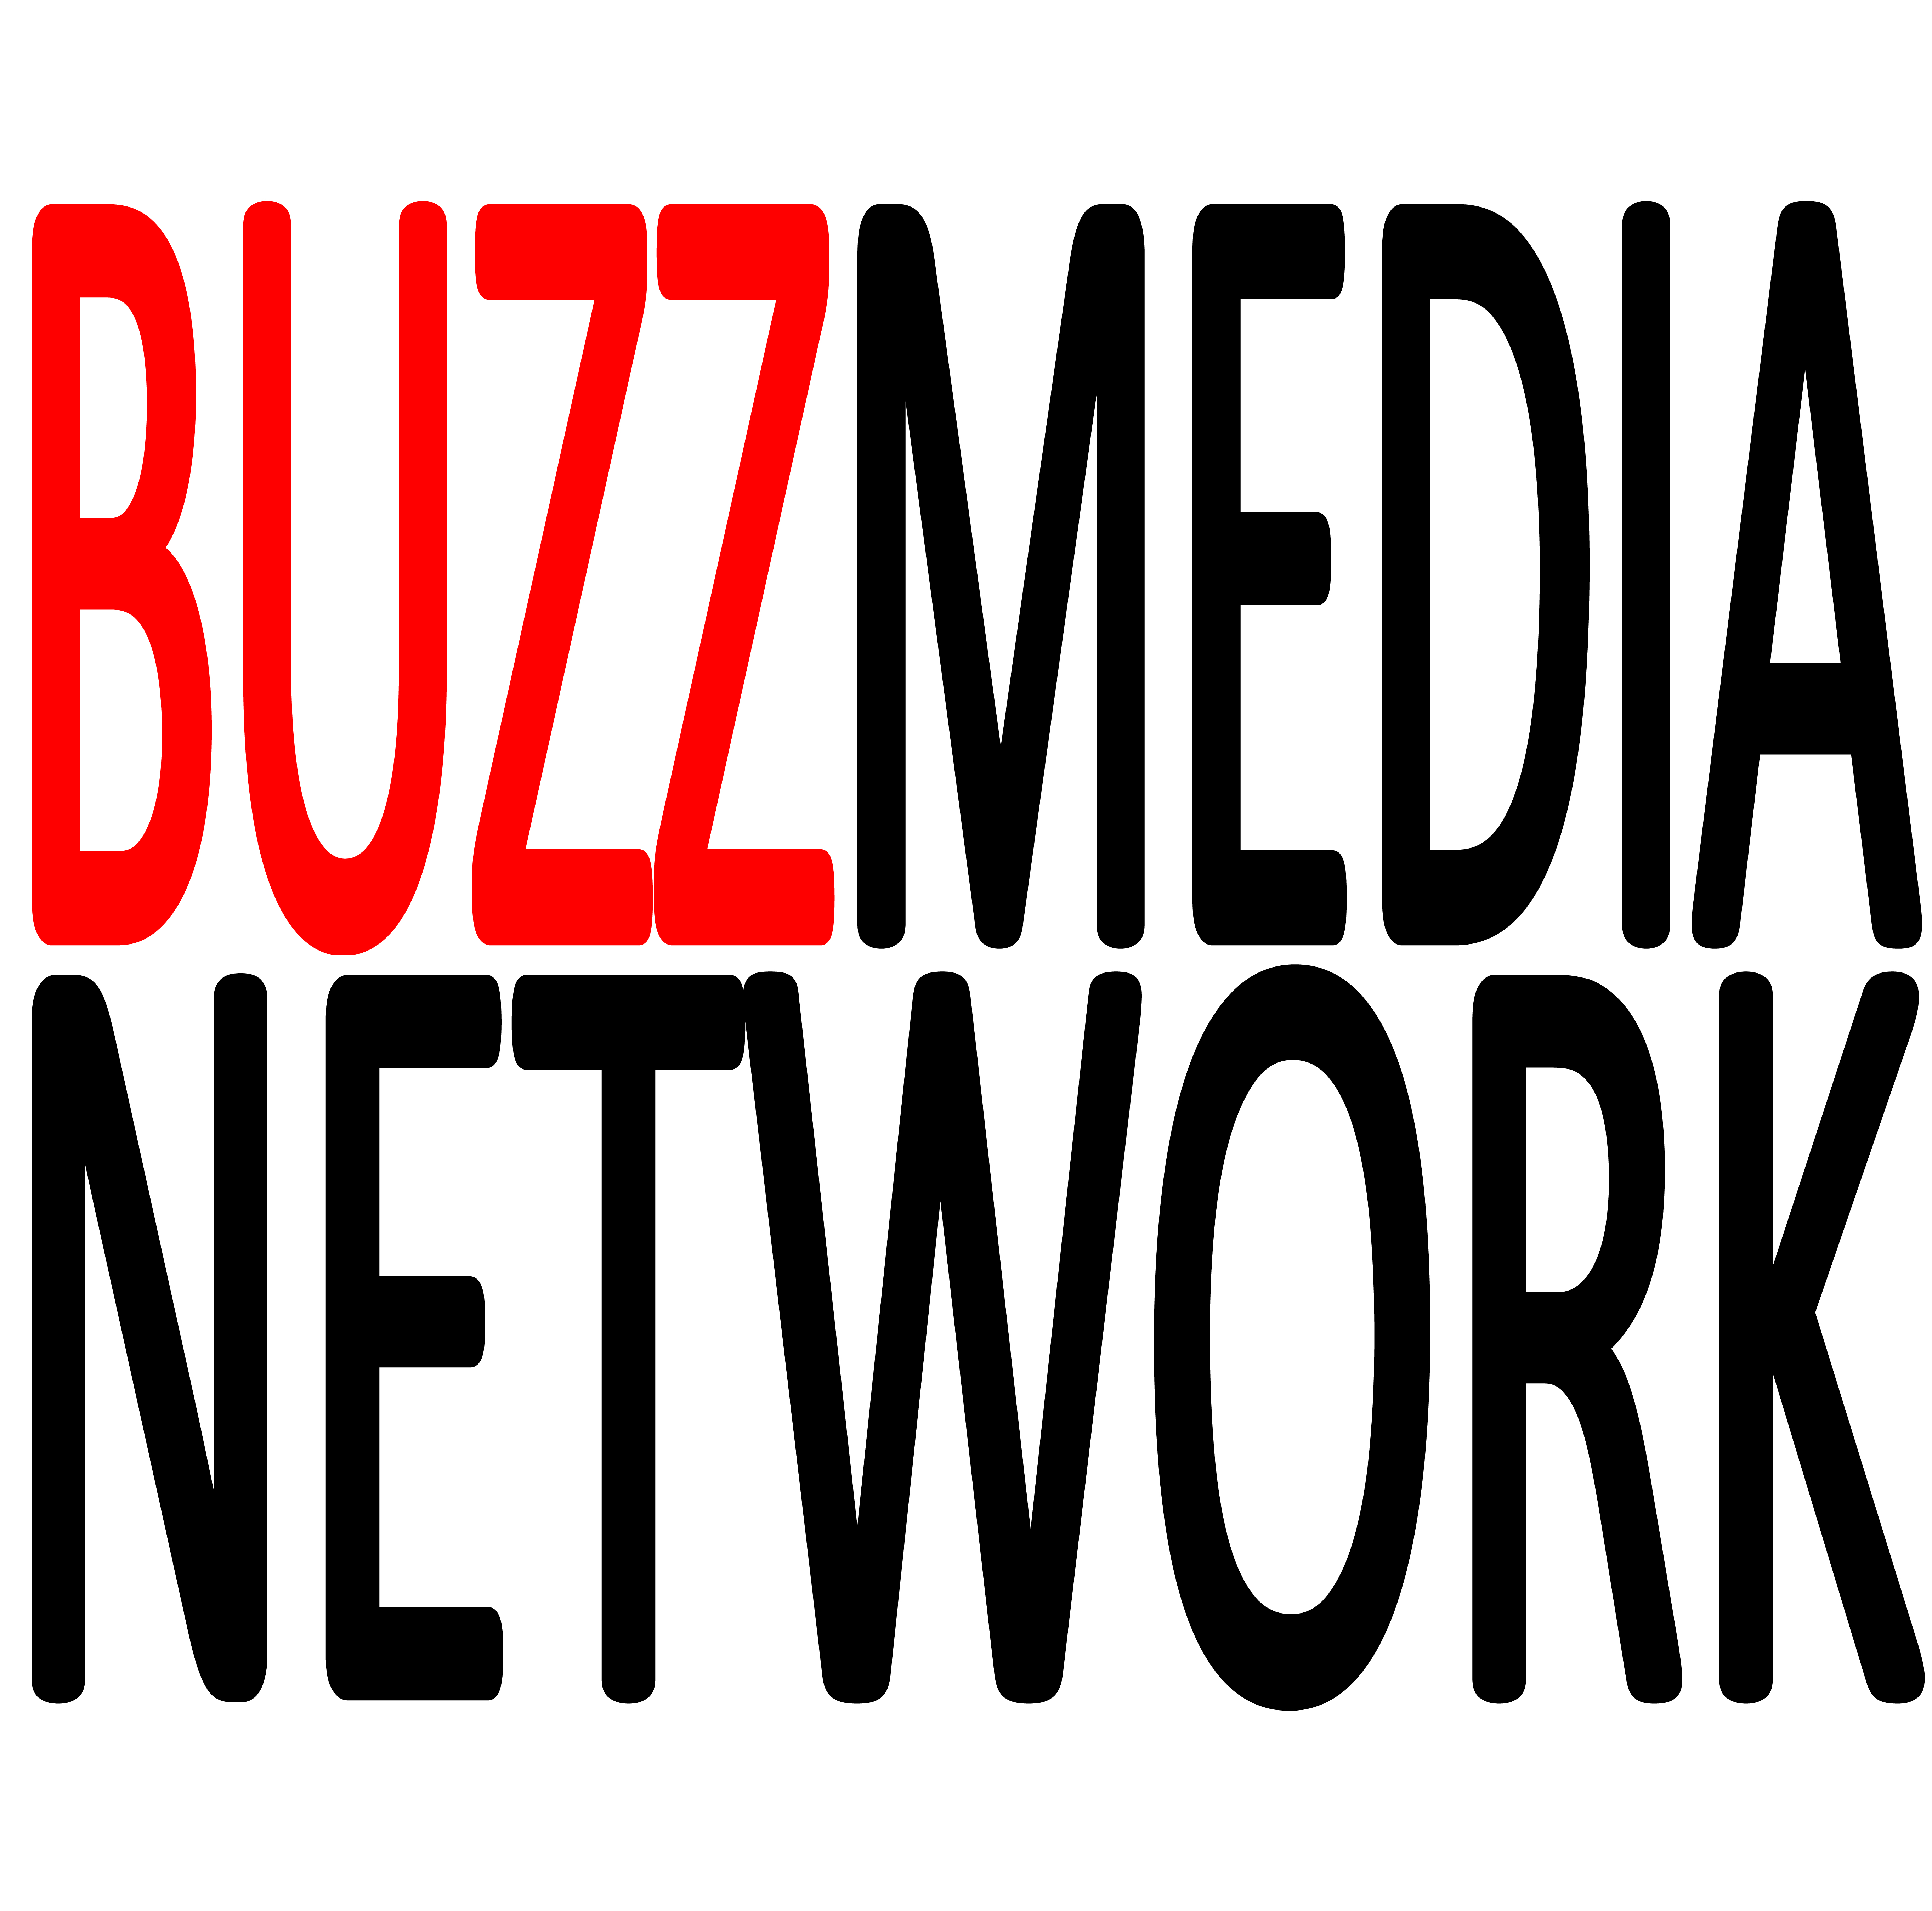 www.buzzmedia.net